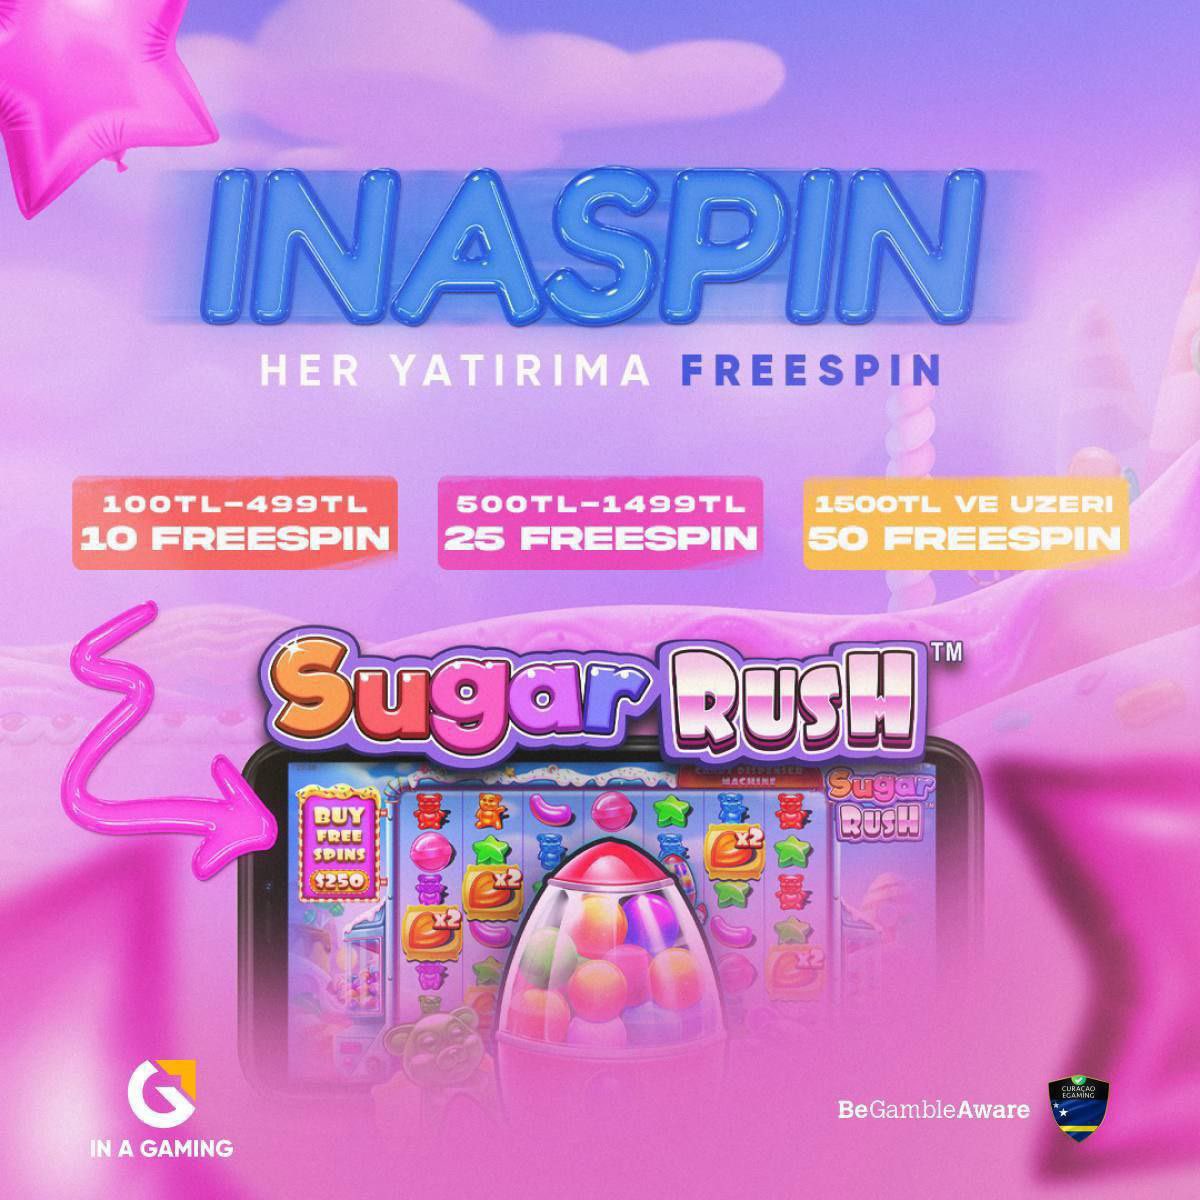 🎰 Yatırım Yap, Freespin Kap! ☺️ 𝙎𝙪𝙜𝙖𝙧 𝙍𝙪𝙨𝙝 Slot oyununa özel her yatırımda freespin seni bekliyor. 📲 inagaming.link/twitter